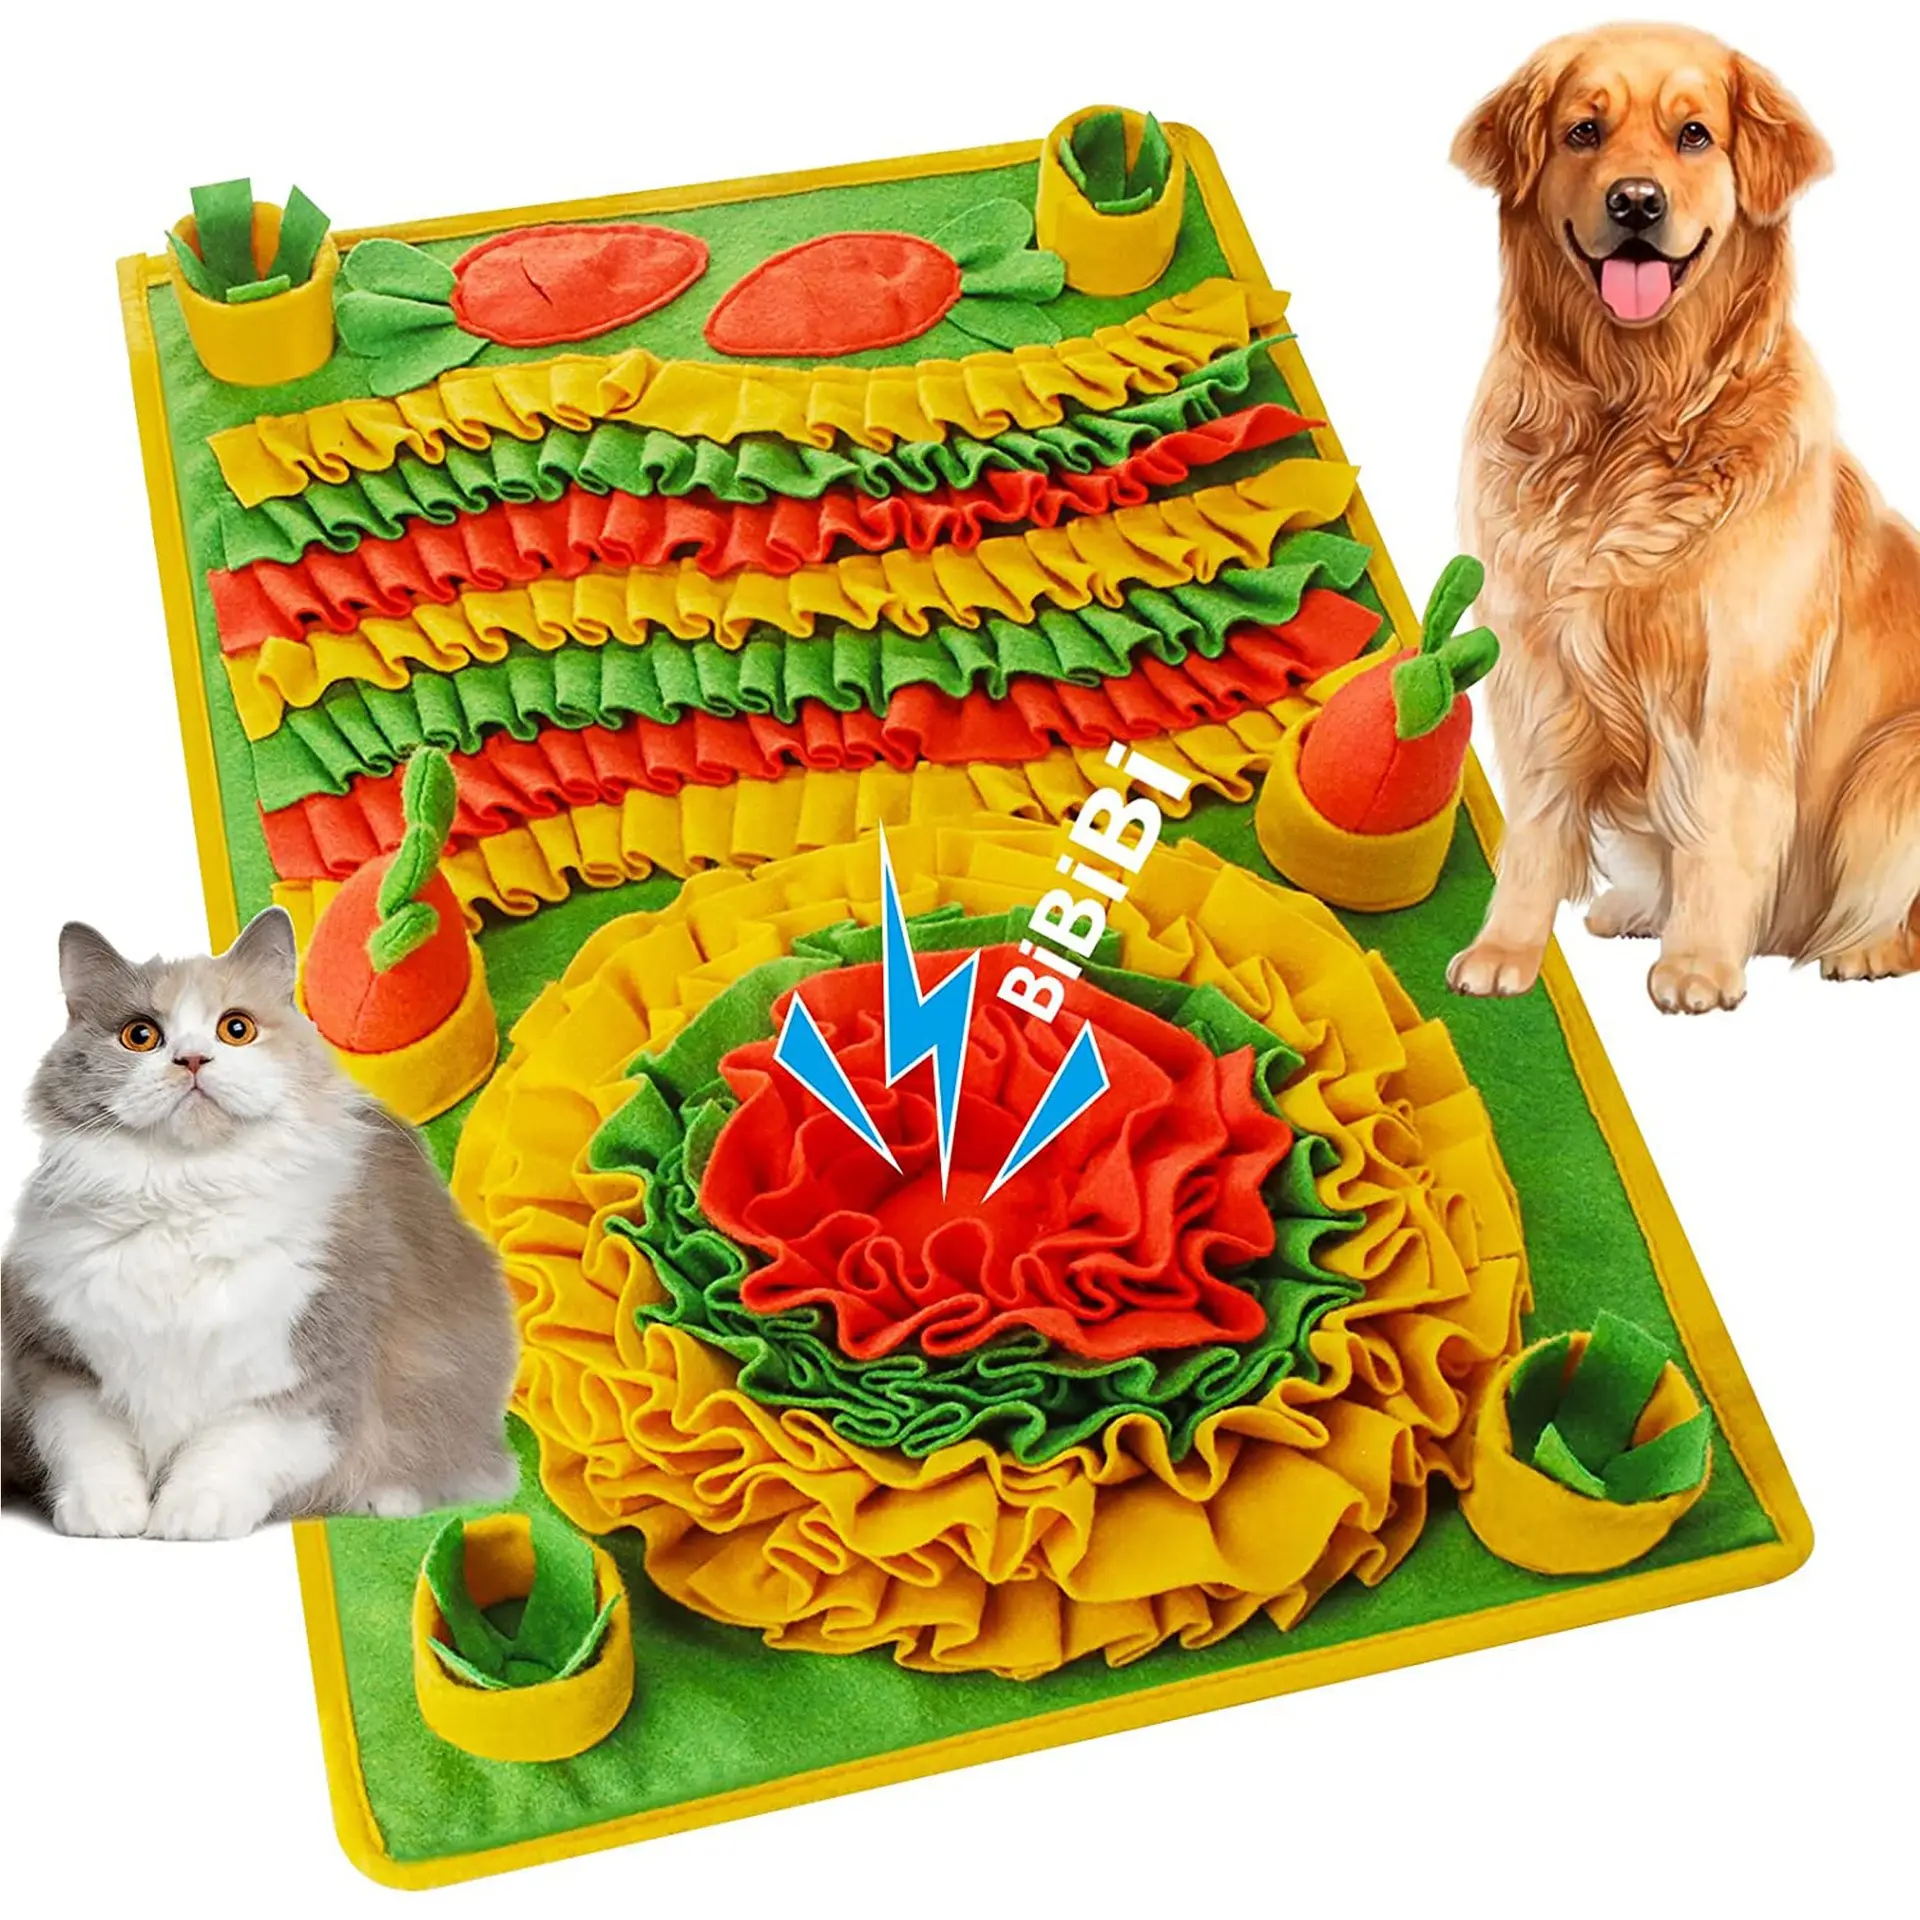 Новый коврик для дрессировки домашних животных, для кошек и собак, Интерактивная игрушка для кормления собак, коврик для вынюхания домашних животных, коврик для принадлежностей для домашних животных